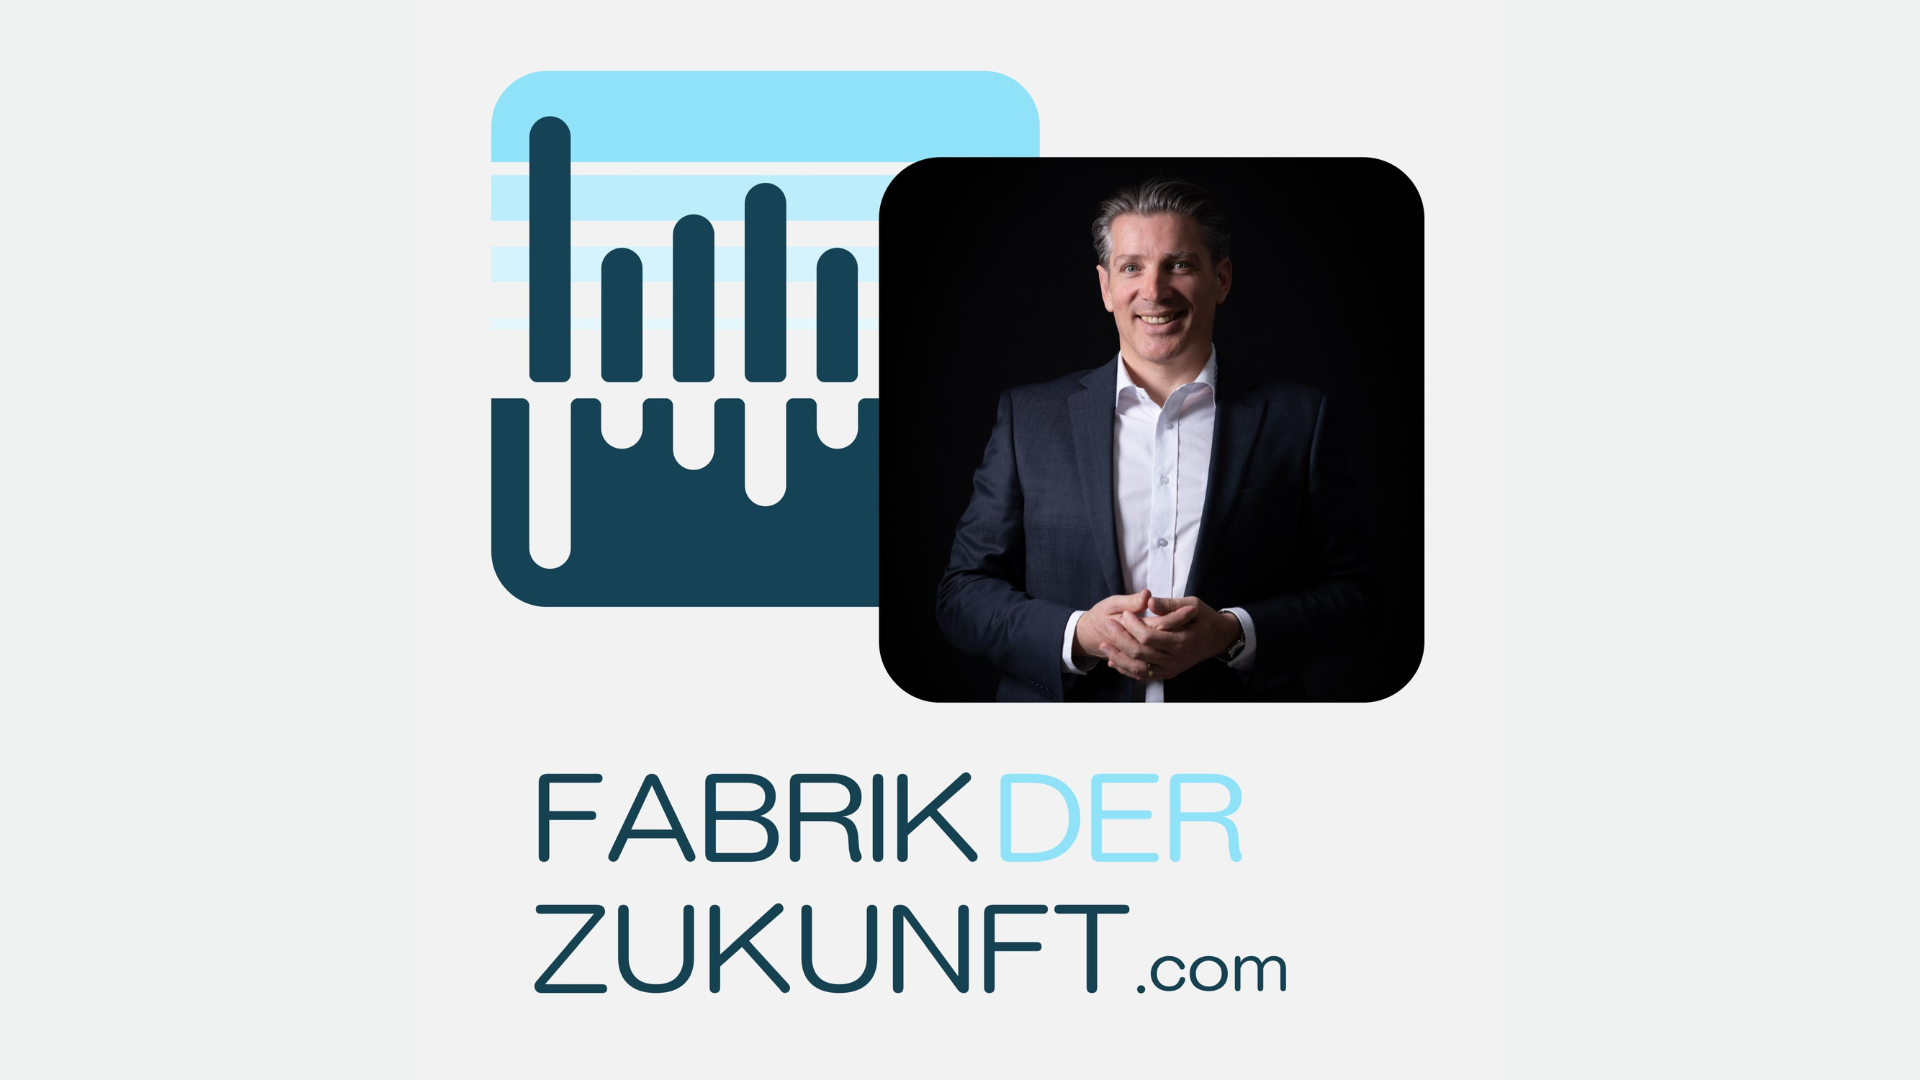 Podcastfolge Fabrik der Zukunft mit Markus Gruber zu Gast bei Tobias Herwig